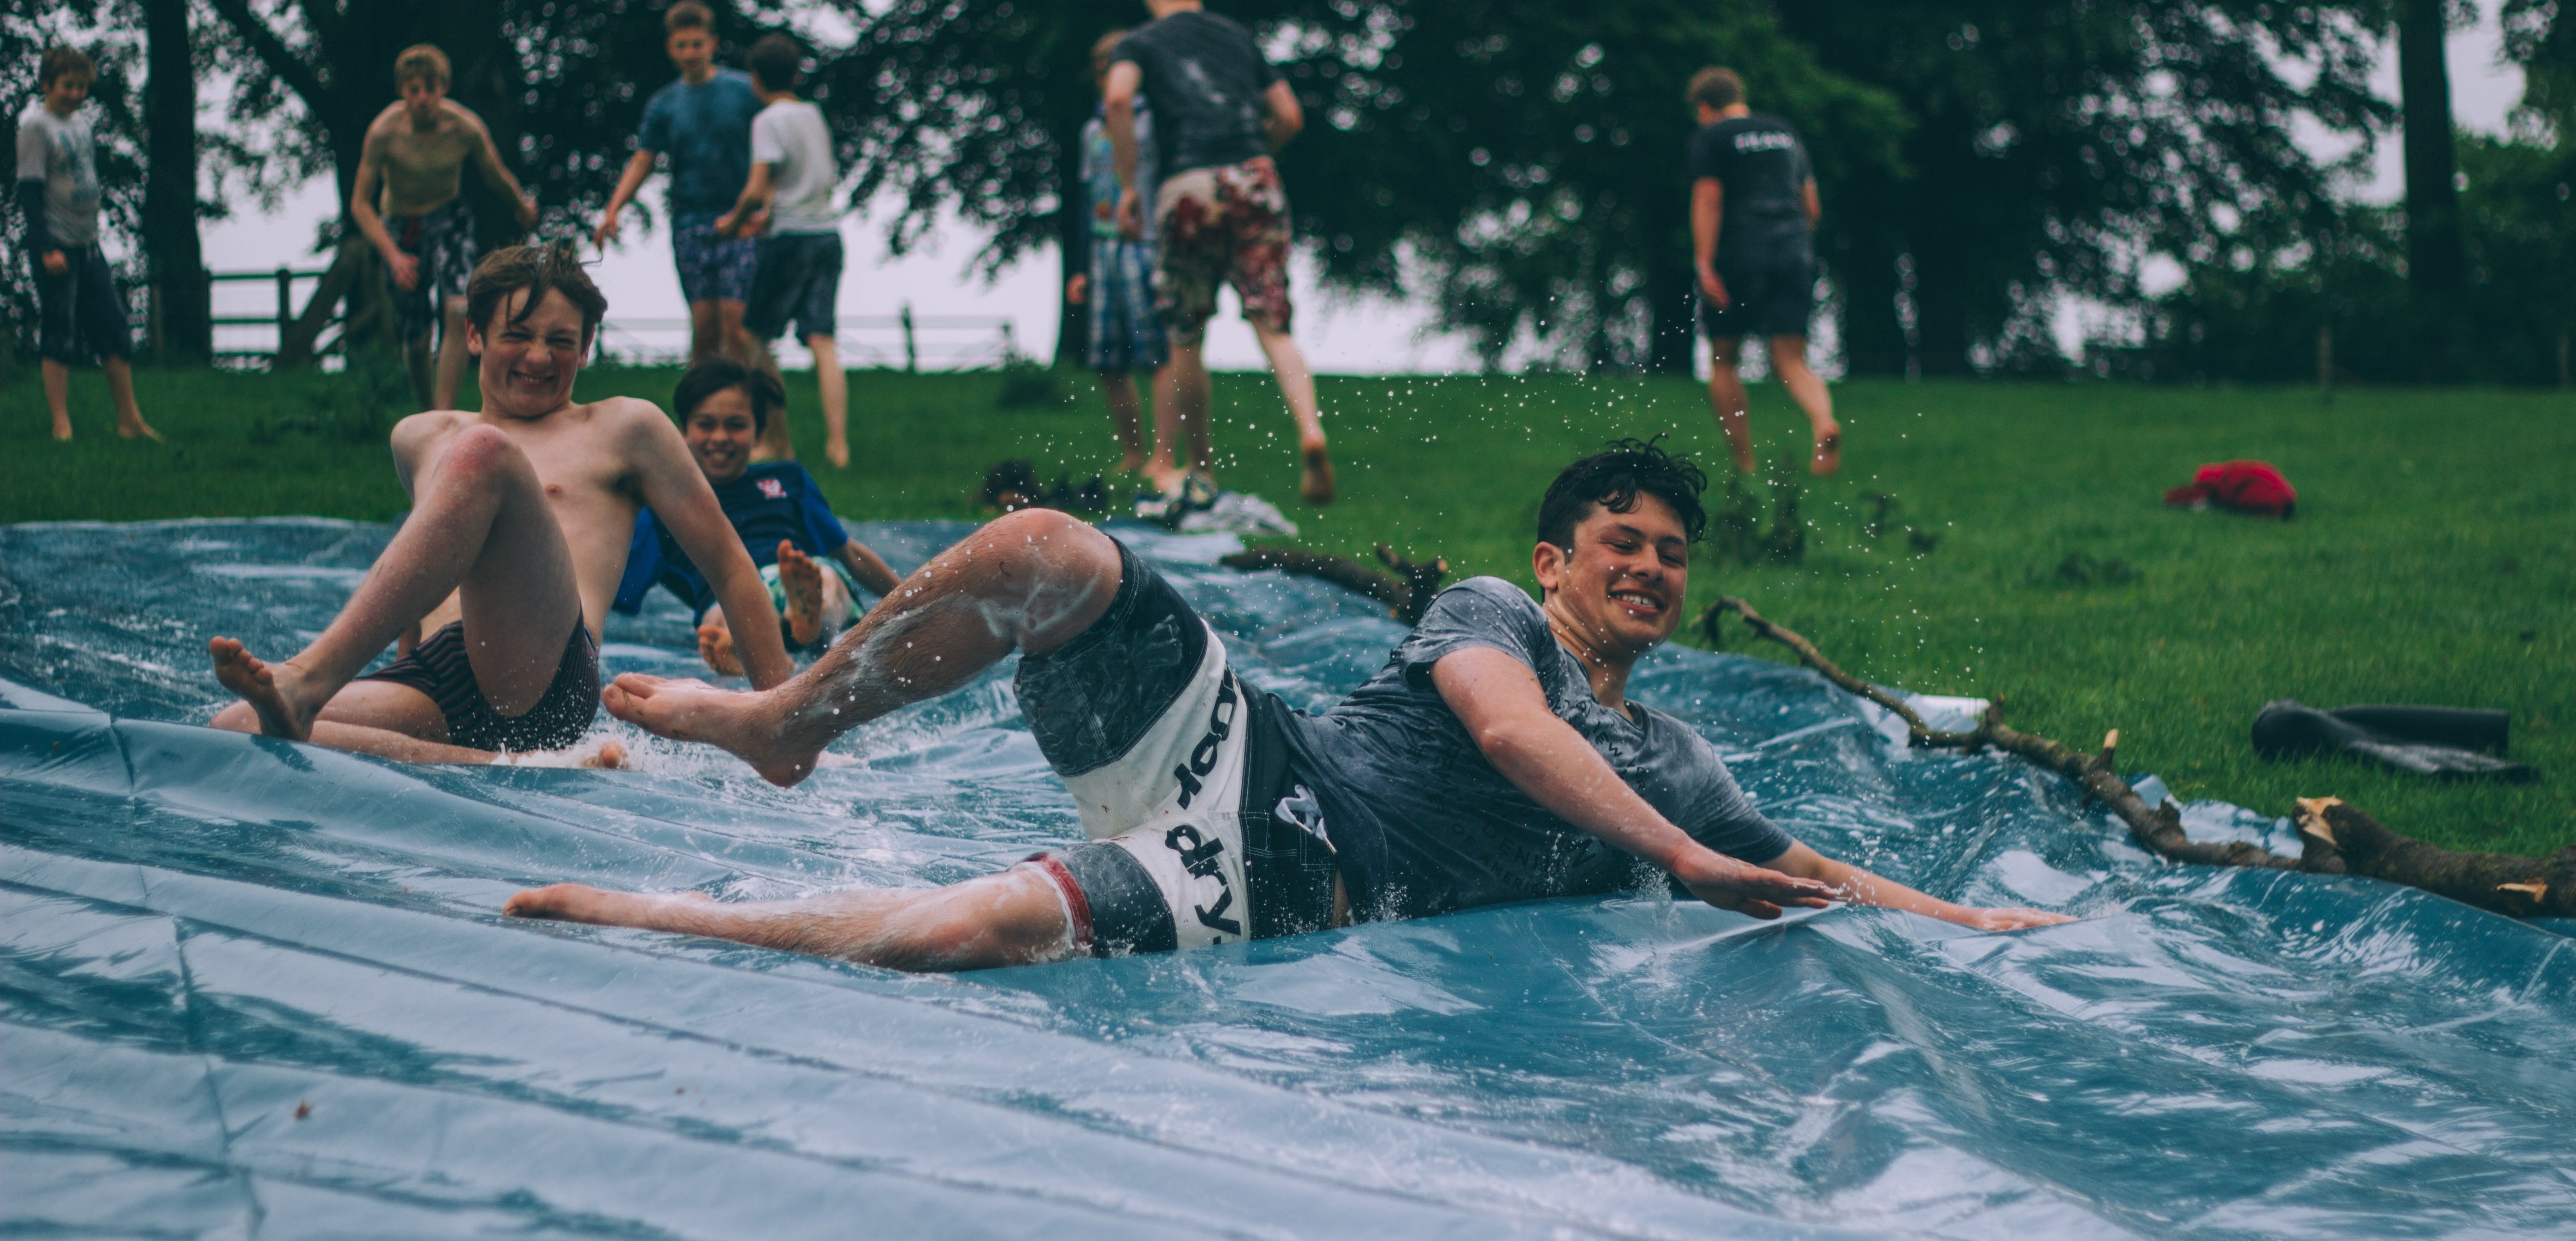 Teenage boys on a water slide looking happy